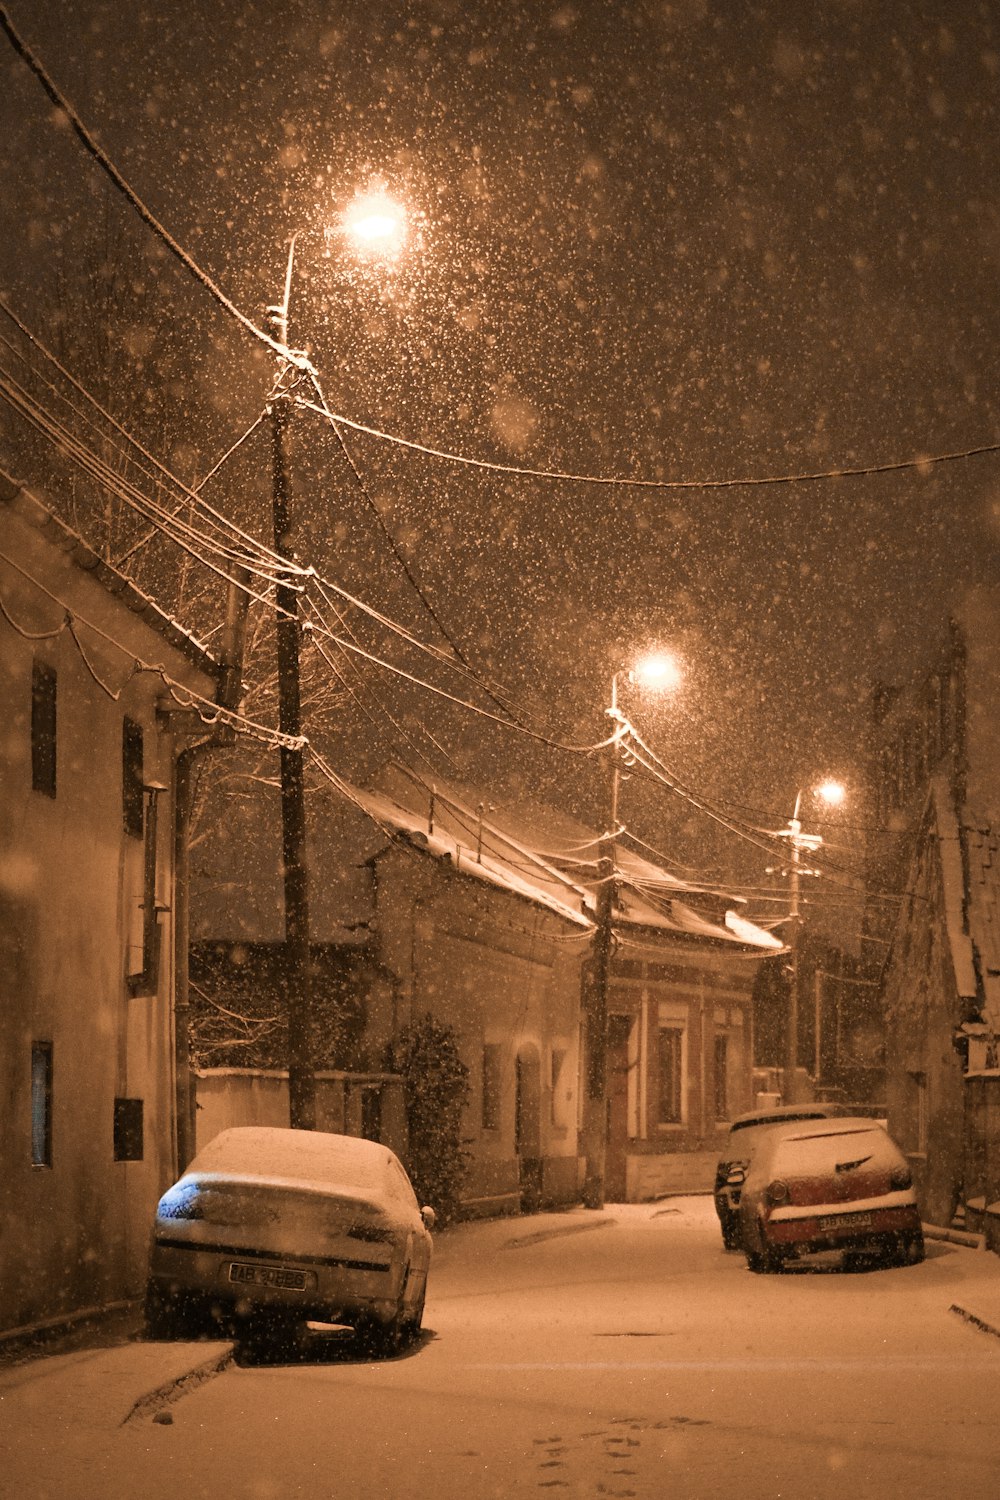 Zwei Autos parken nachts auf einer verschneiten Straße